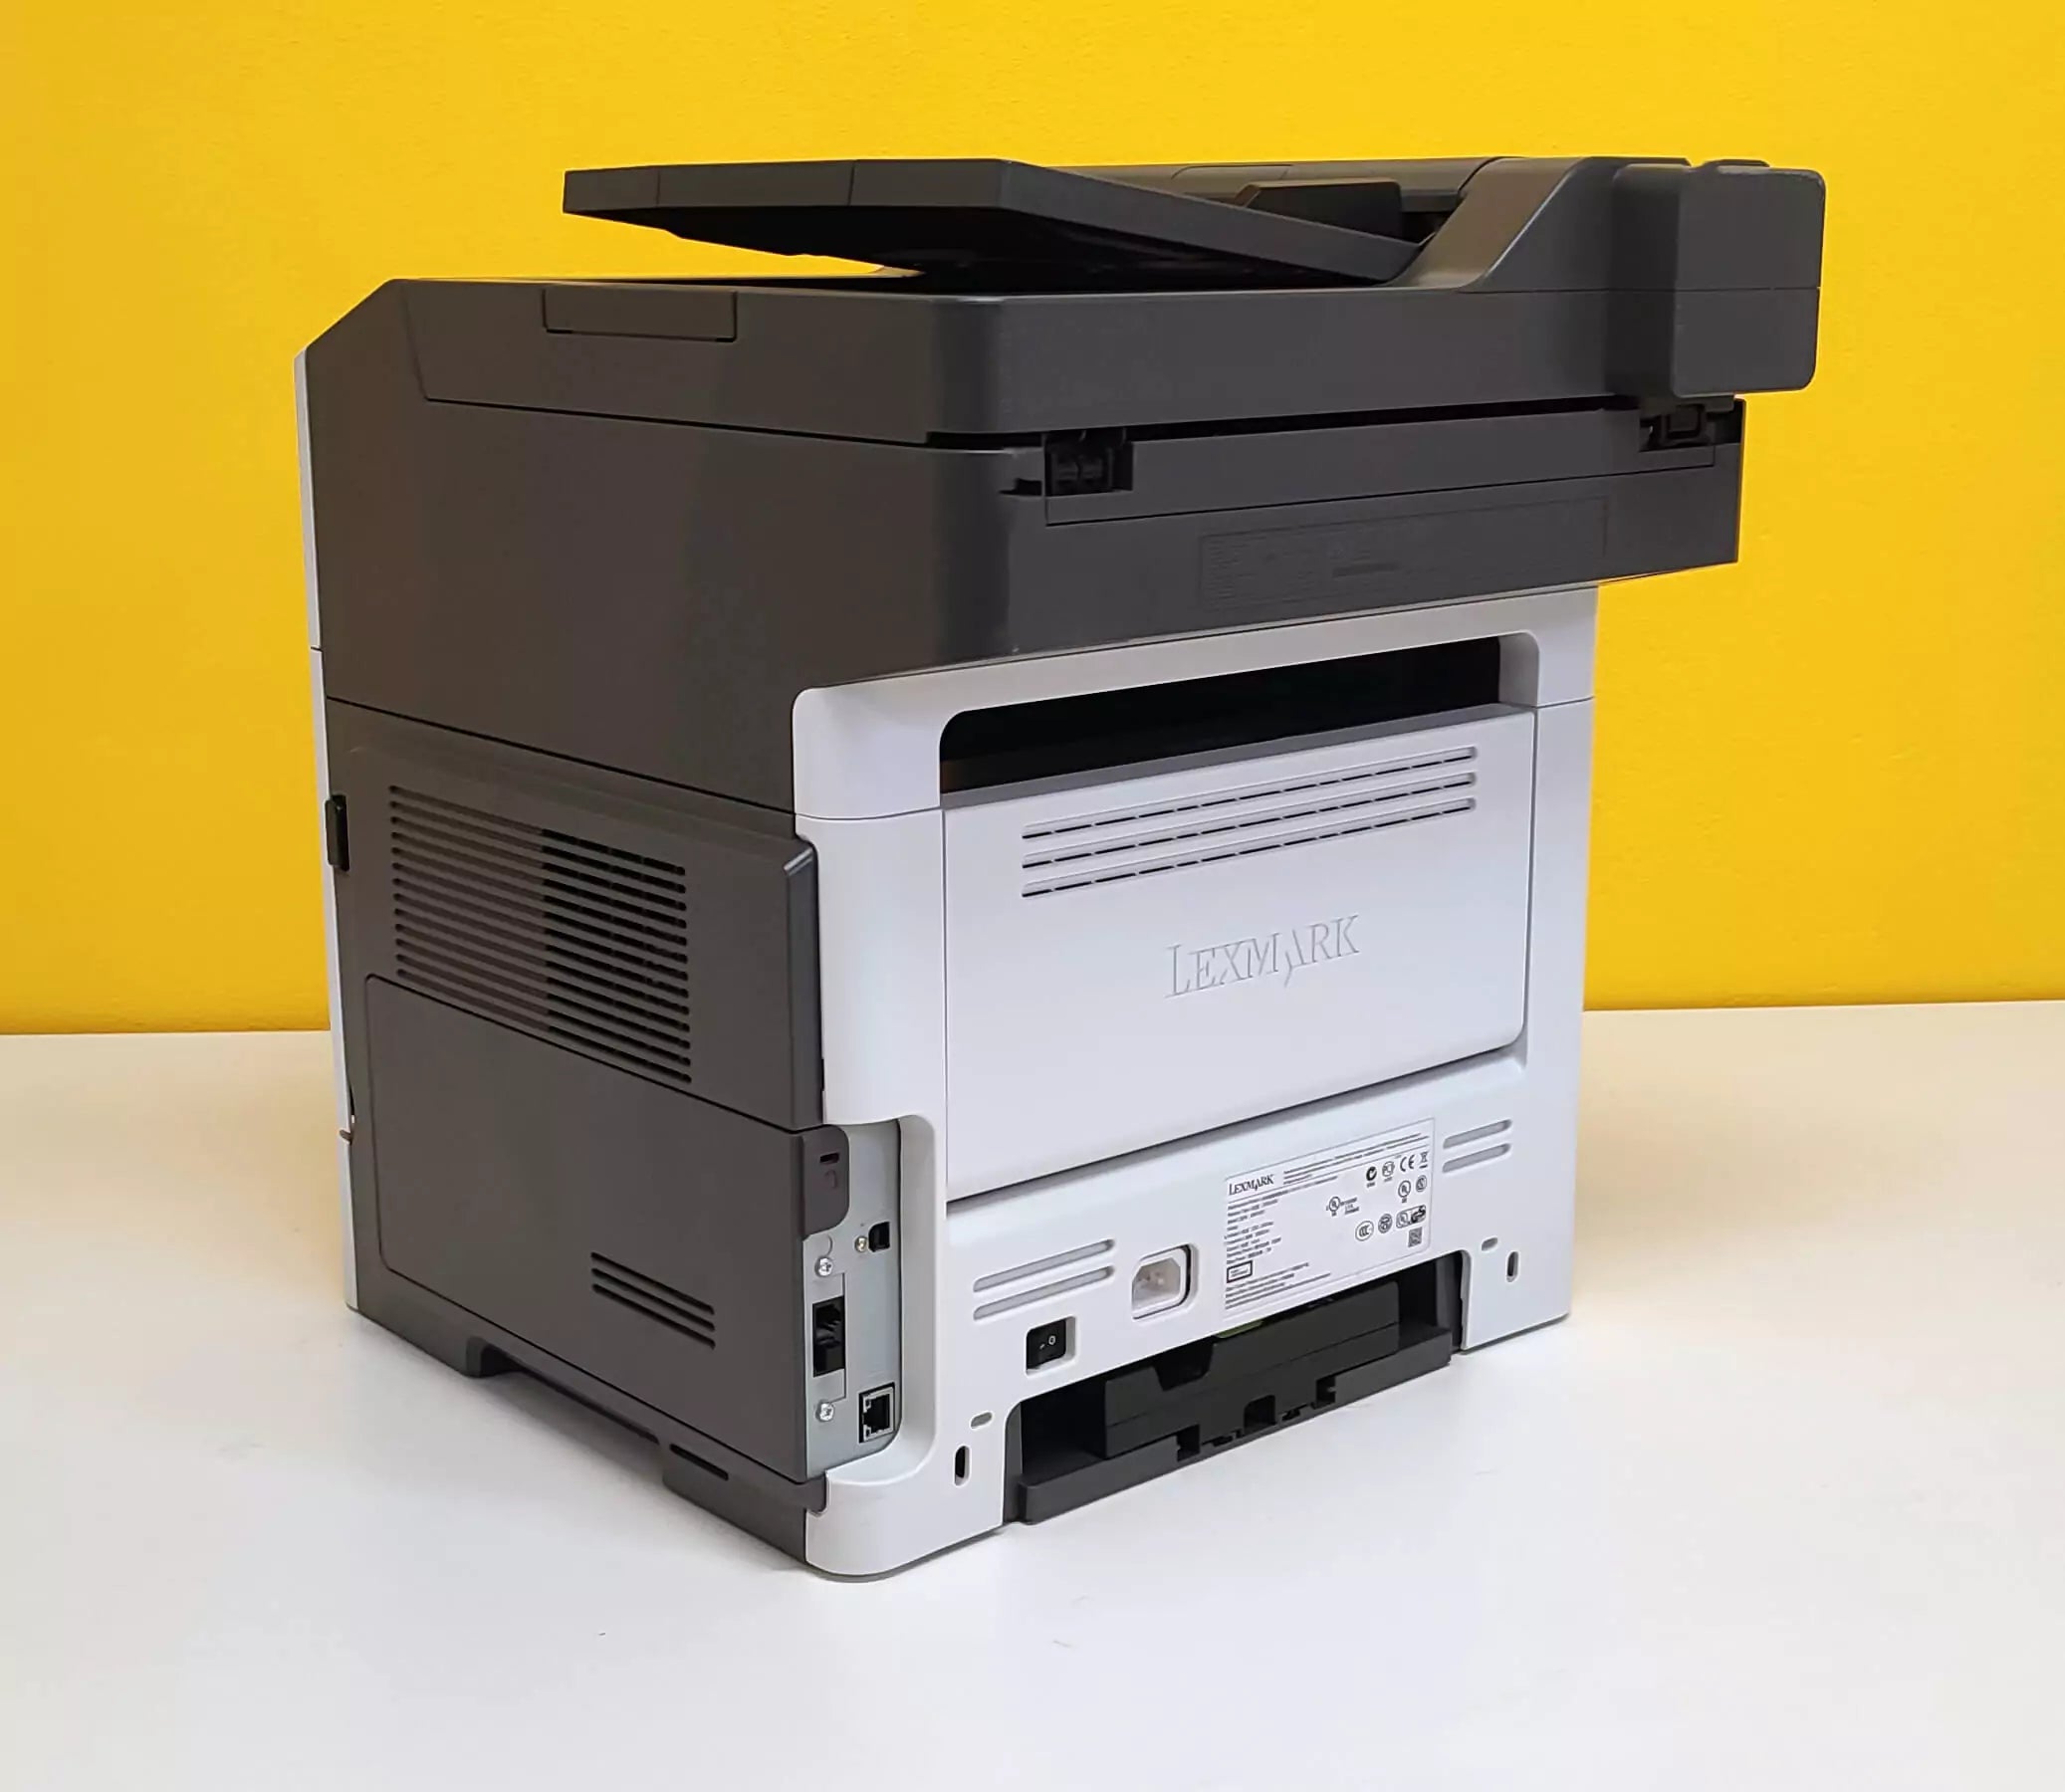 Lexmark XM1140 Multifunzione Laser A4 Monocromatica B/N 1200x1200 DPI 38ppm Duplex Stampa Fronte/Retro automatica Fax Rete USB